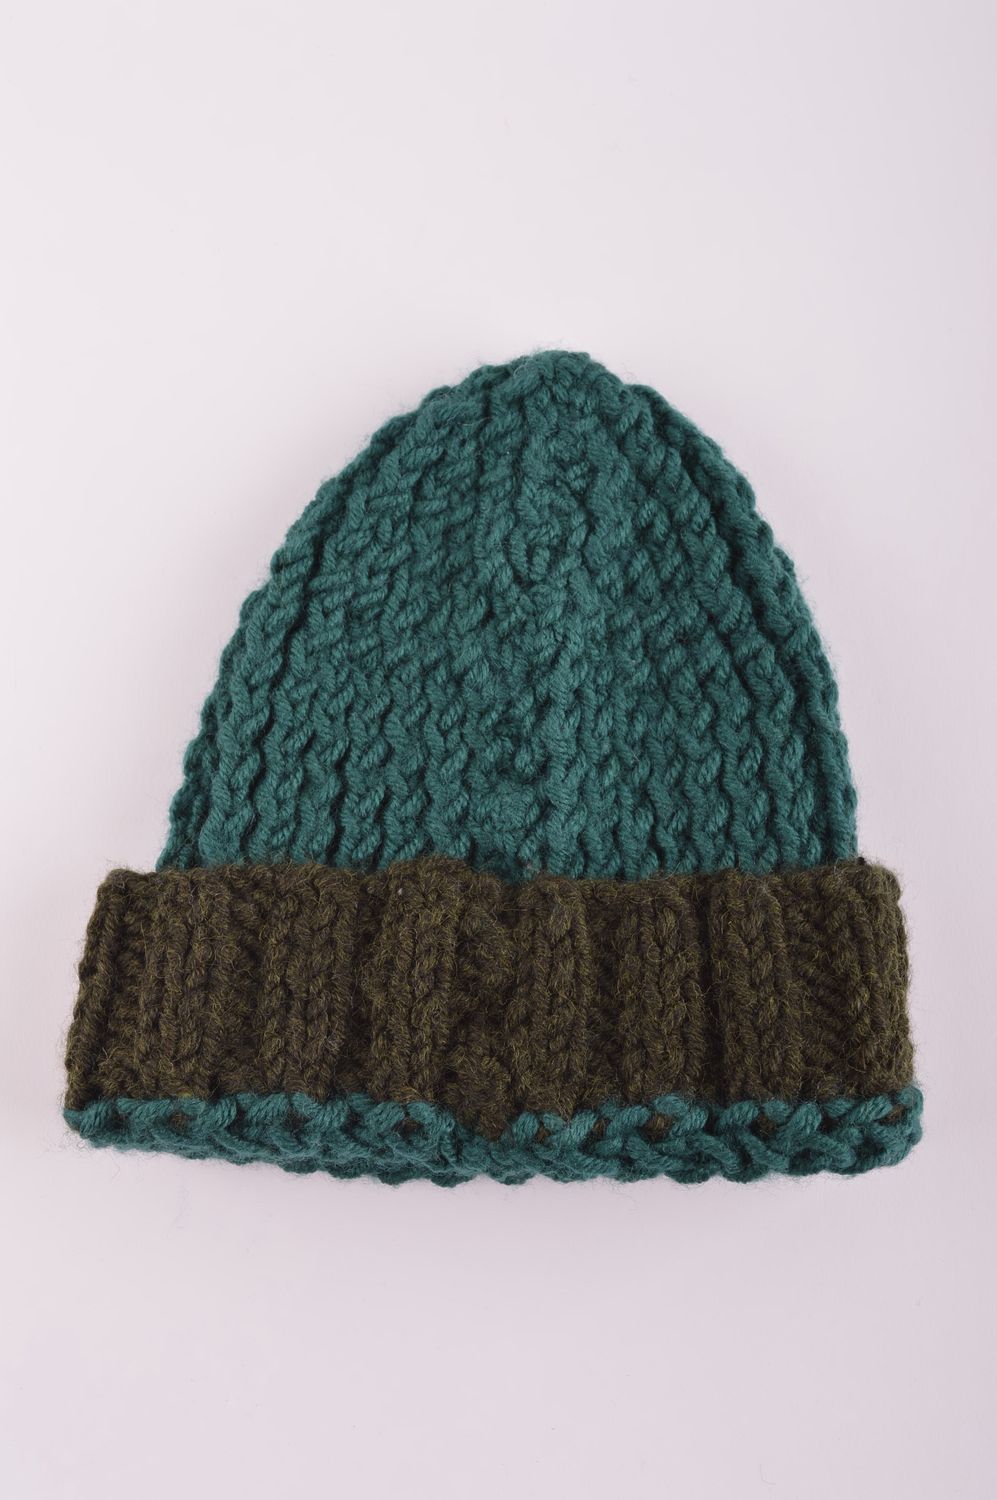 Hand-knitted winter hat handmade woolen hat winter accessories warm hat photo 4